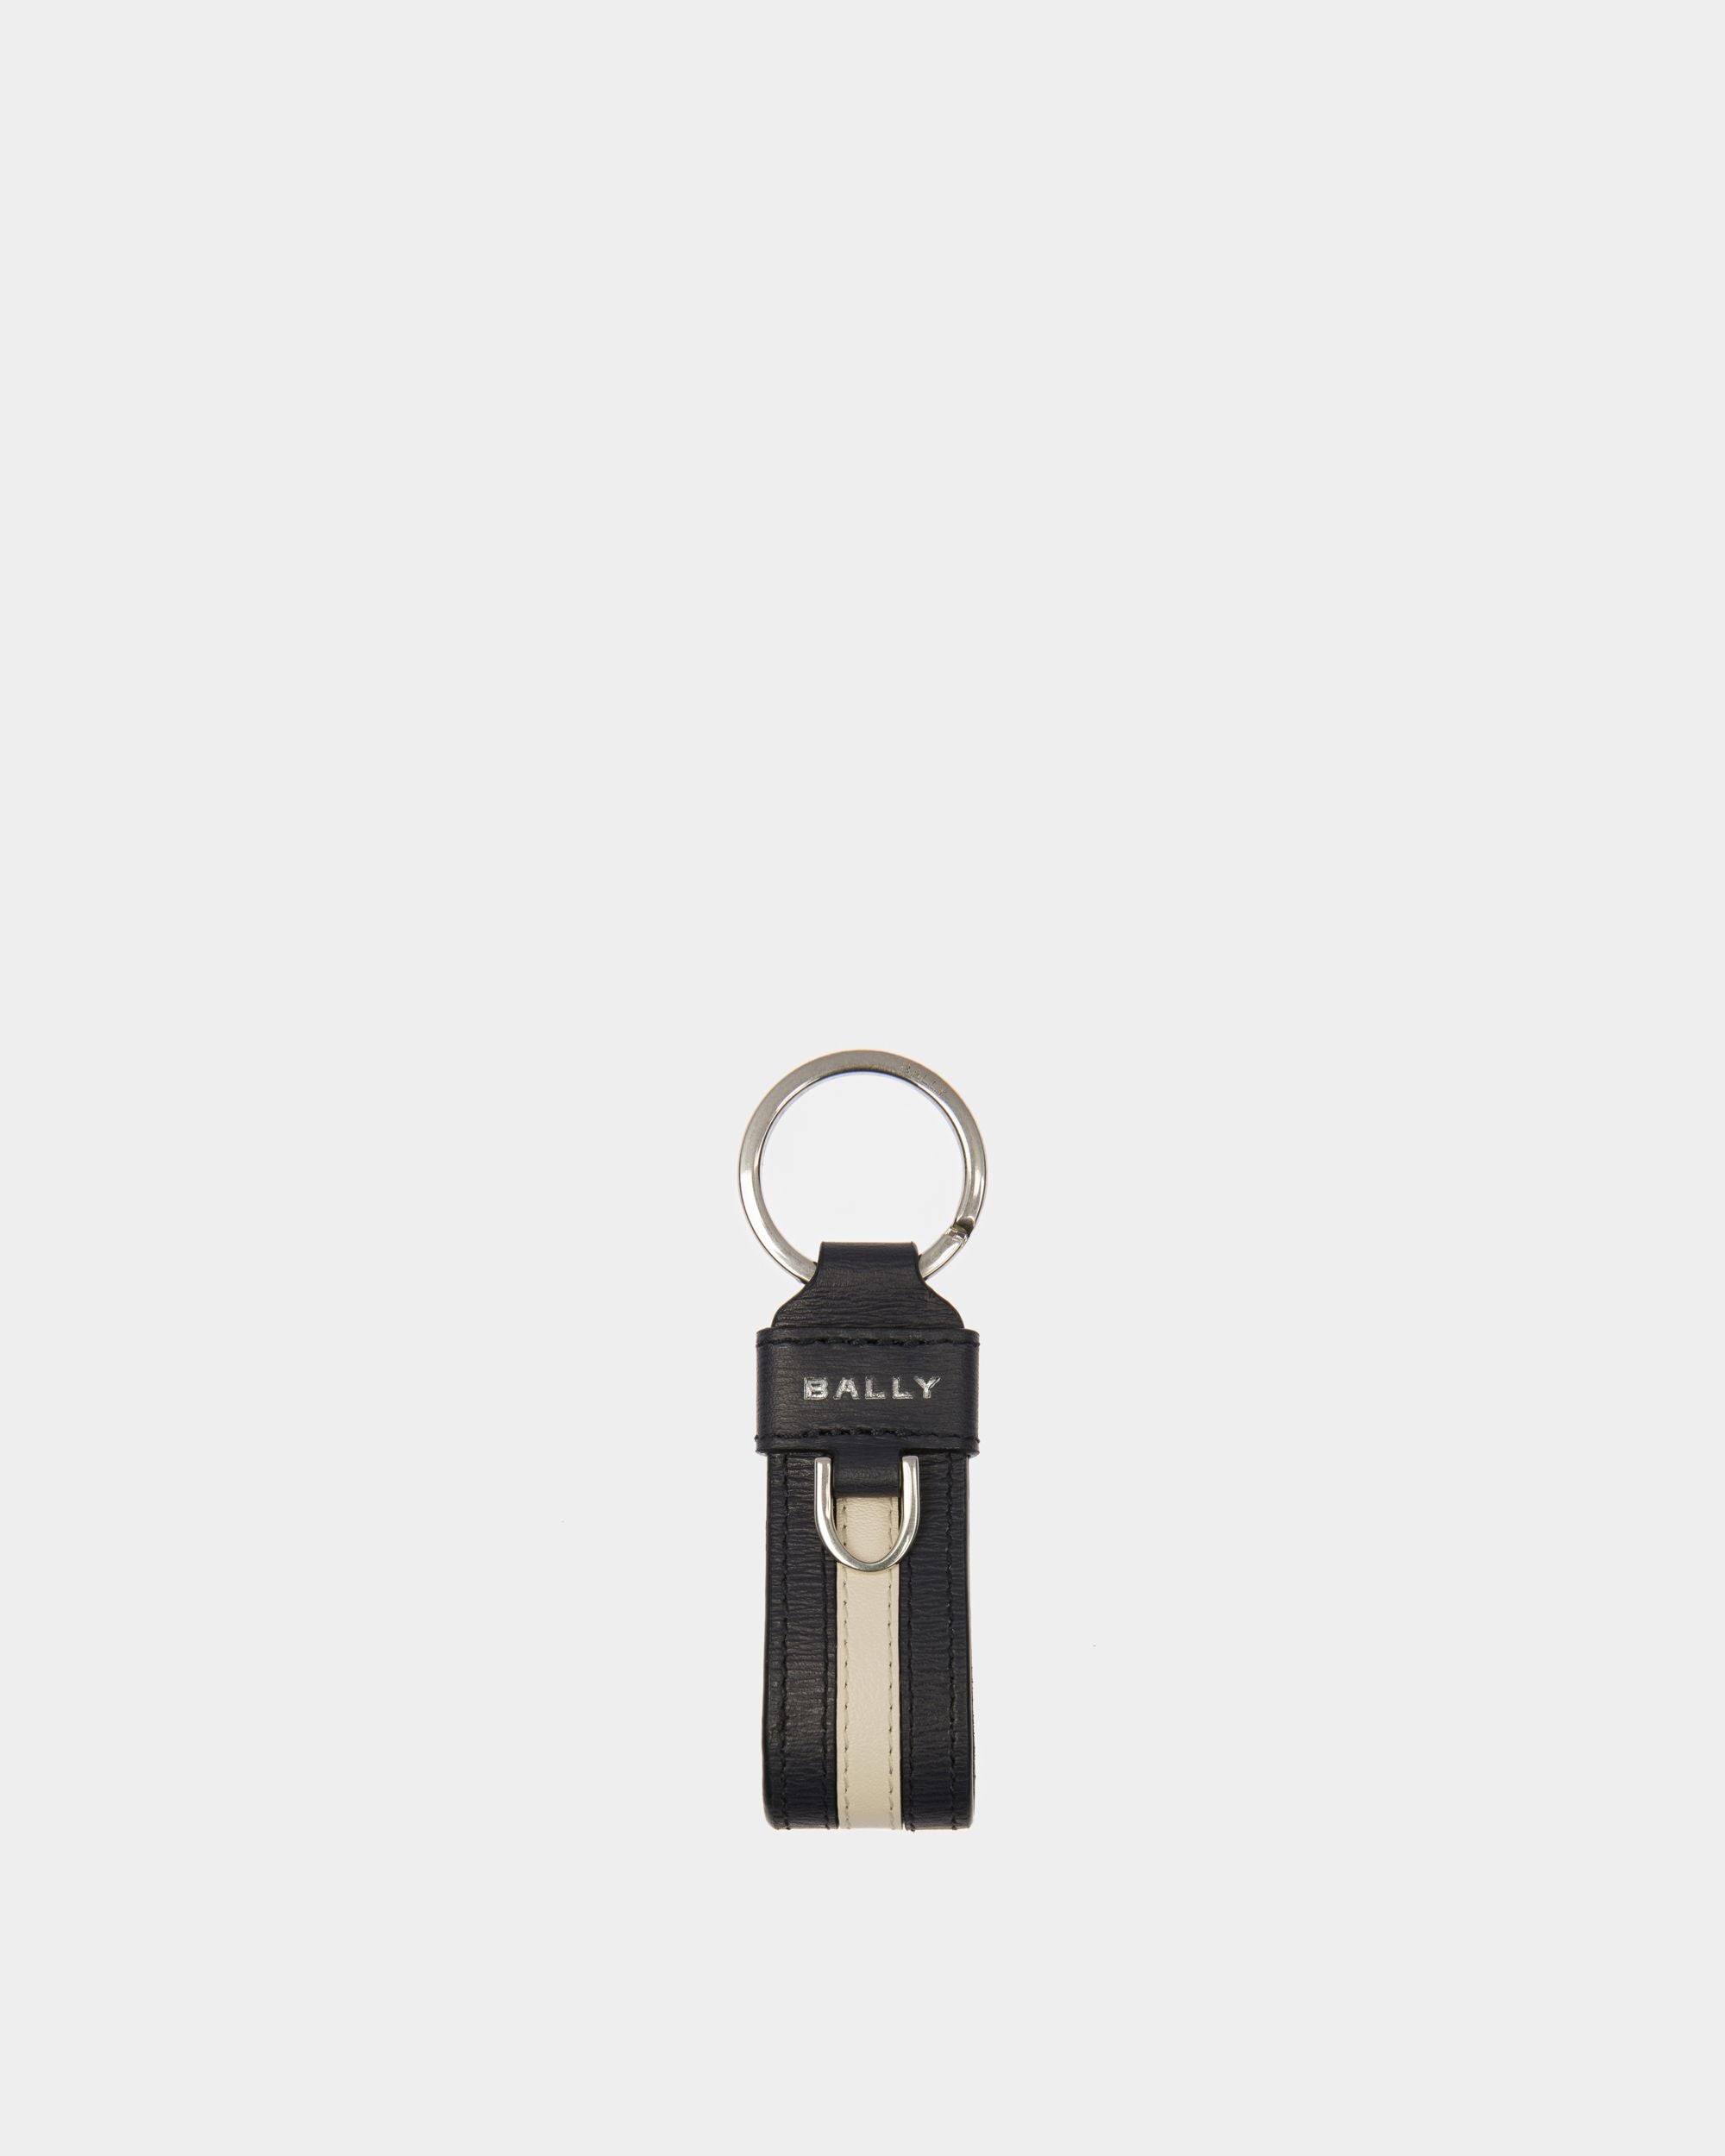 Ribbon Schlüsselanhänger | Schlüsselanhänger für Herren | Mitternachtsblaues Leder | Bally | Still Life Vorderseite